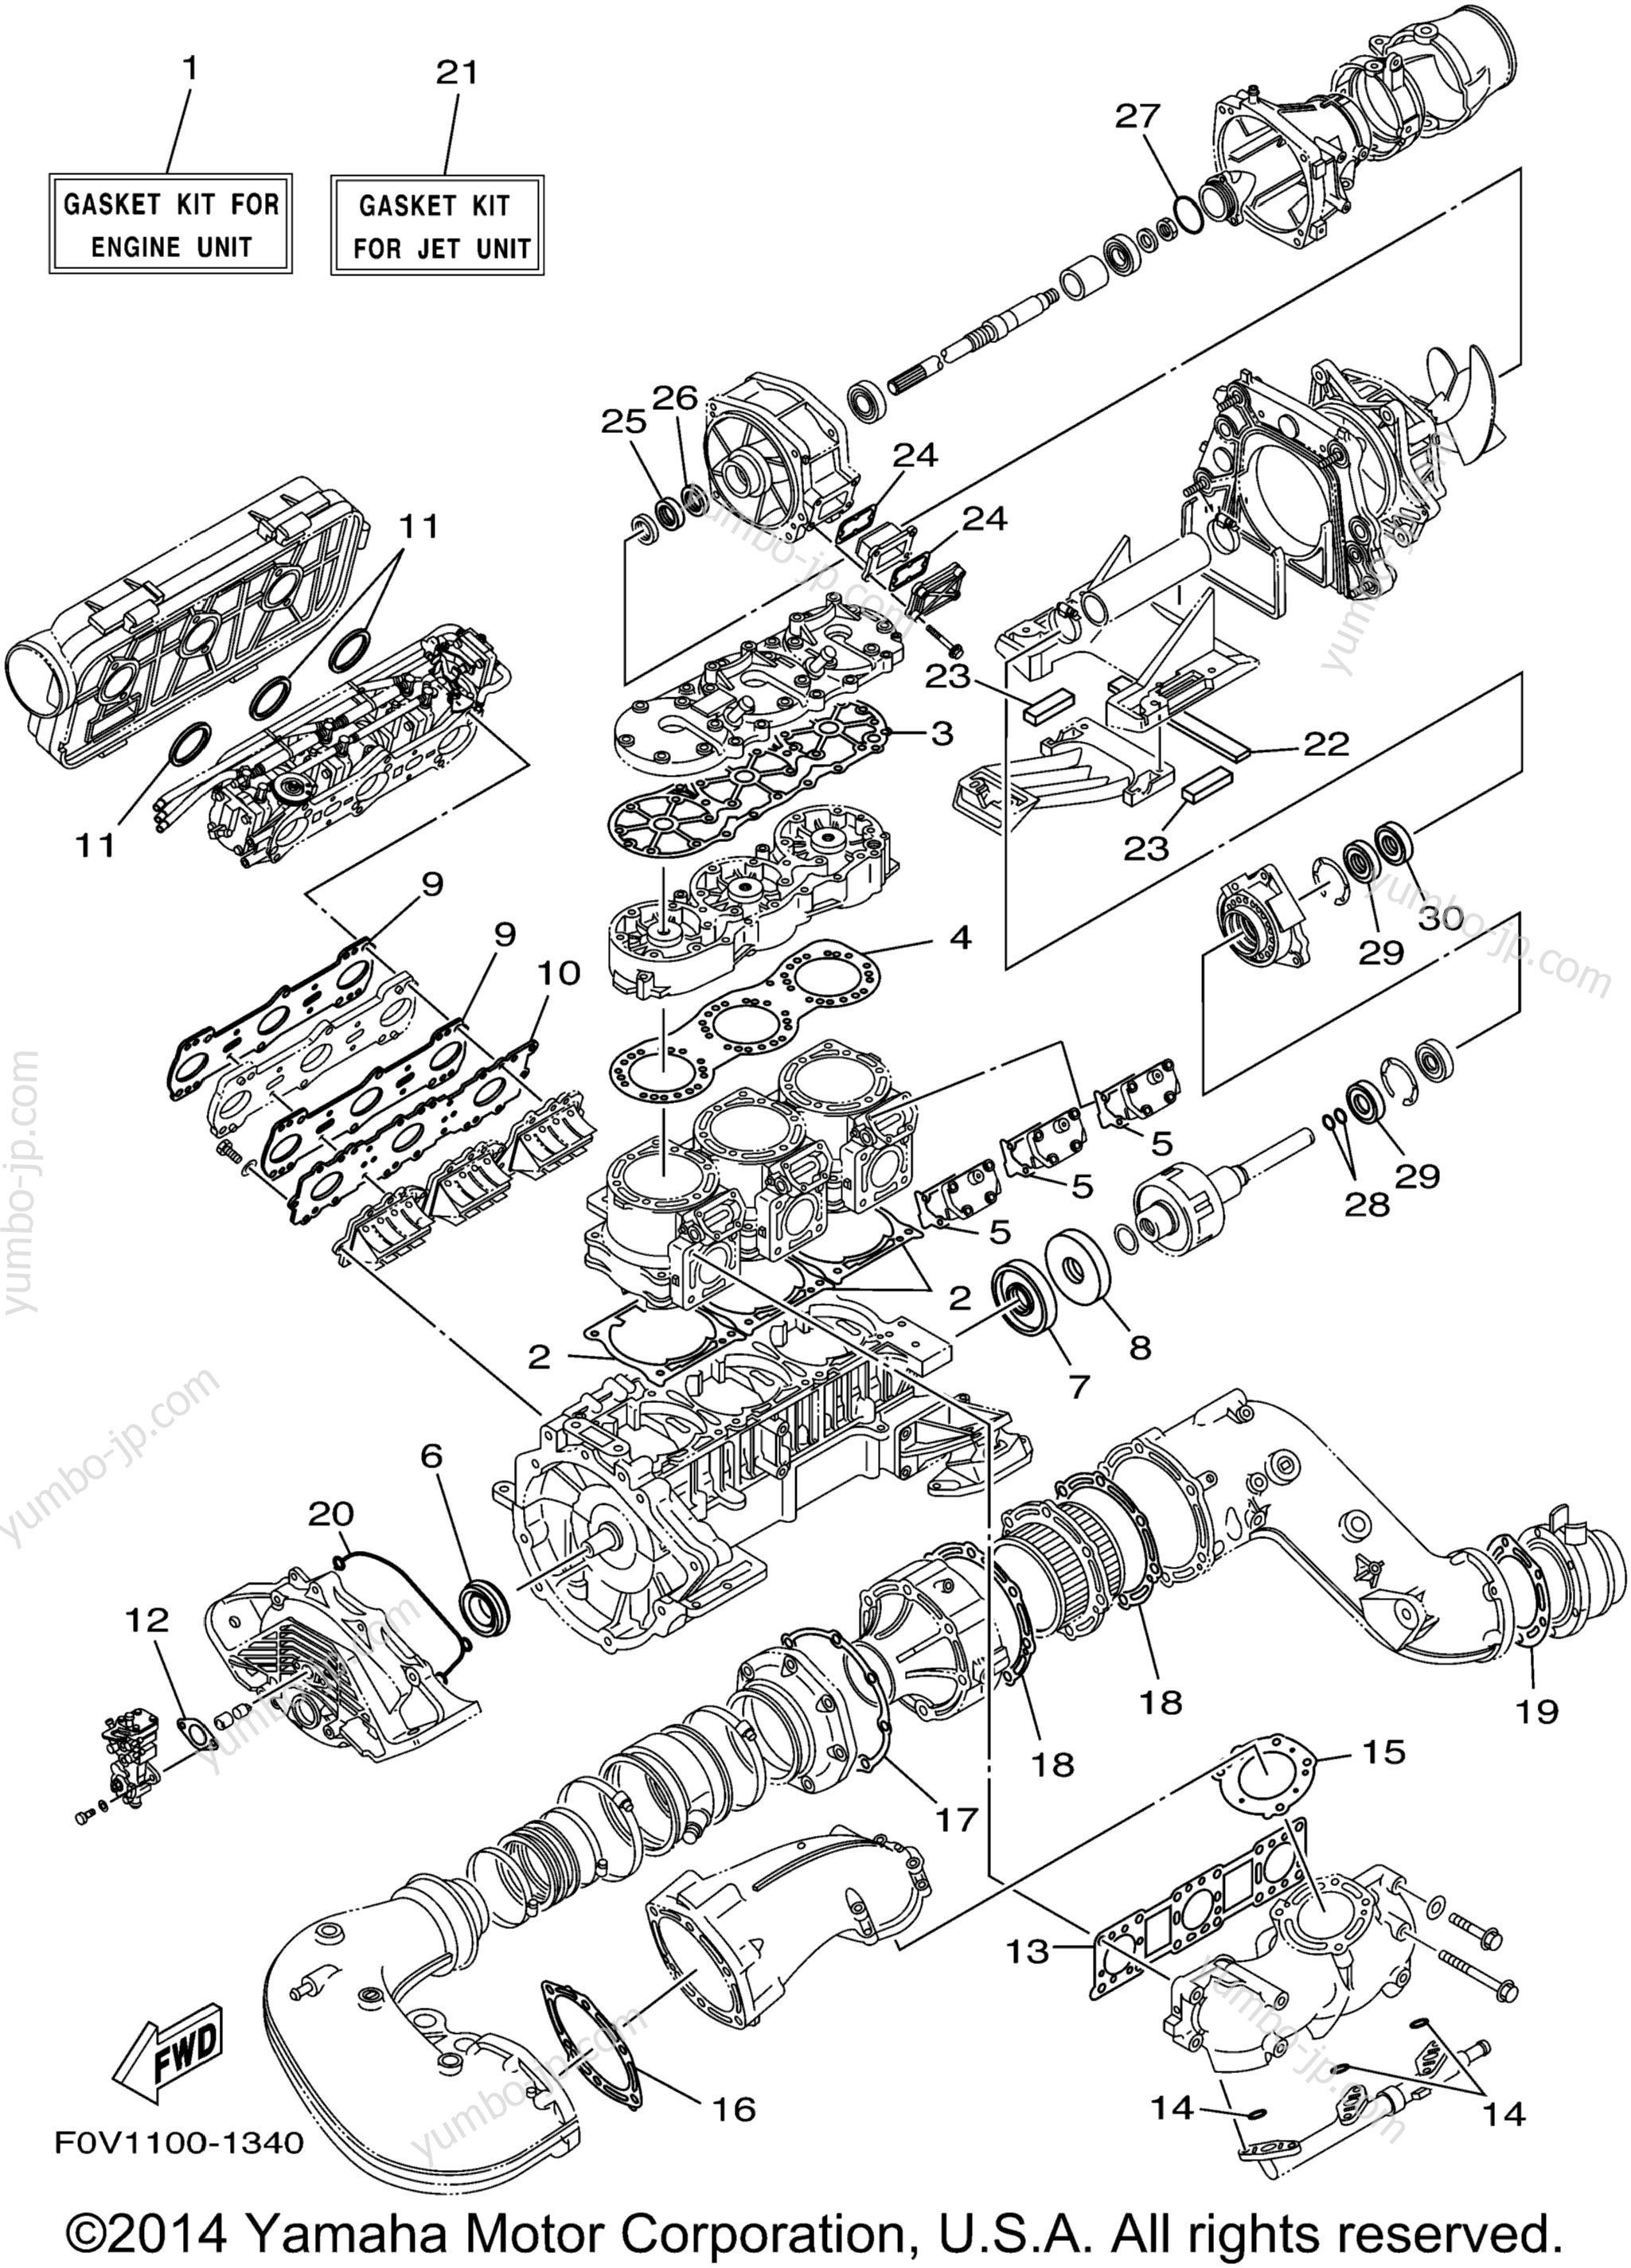 Repair Kit 1 для гидроциклов YAMAHA XLT1200 (XA1200AZ) 2001 г.